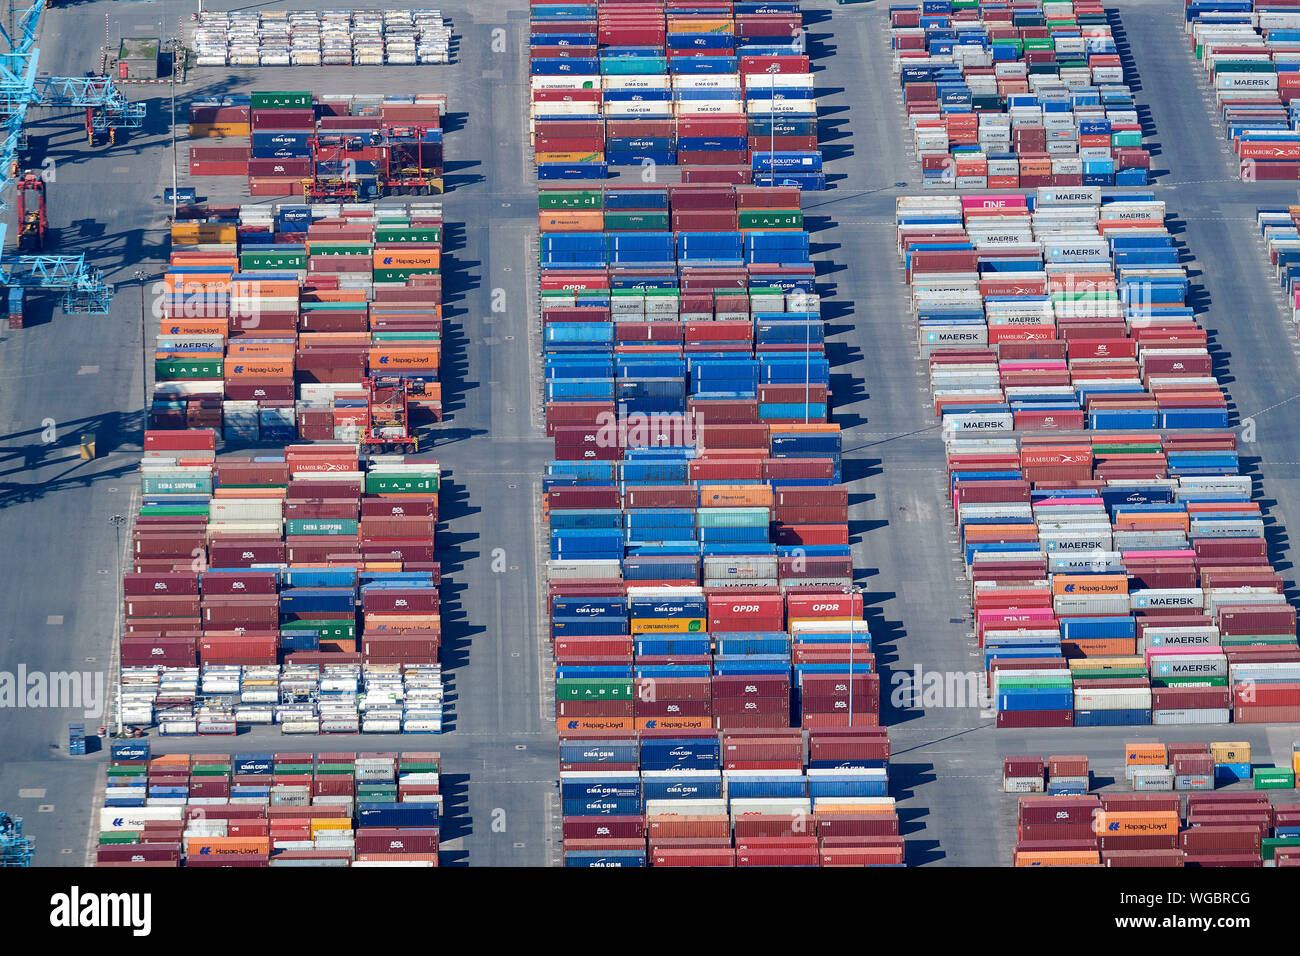 Ein Luftbild von Containern auf der Hafenassistent in Seaforth Dock, Liverpool, Merseyside, North West England, Großbritannien Stockfoto